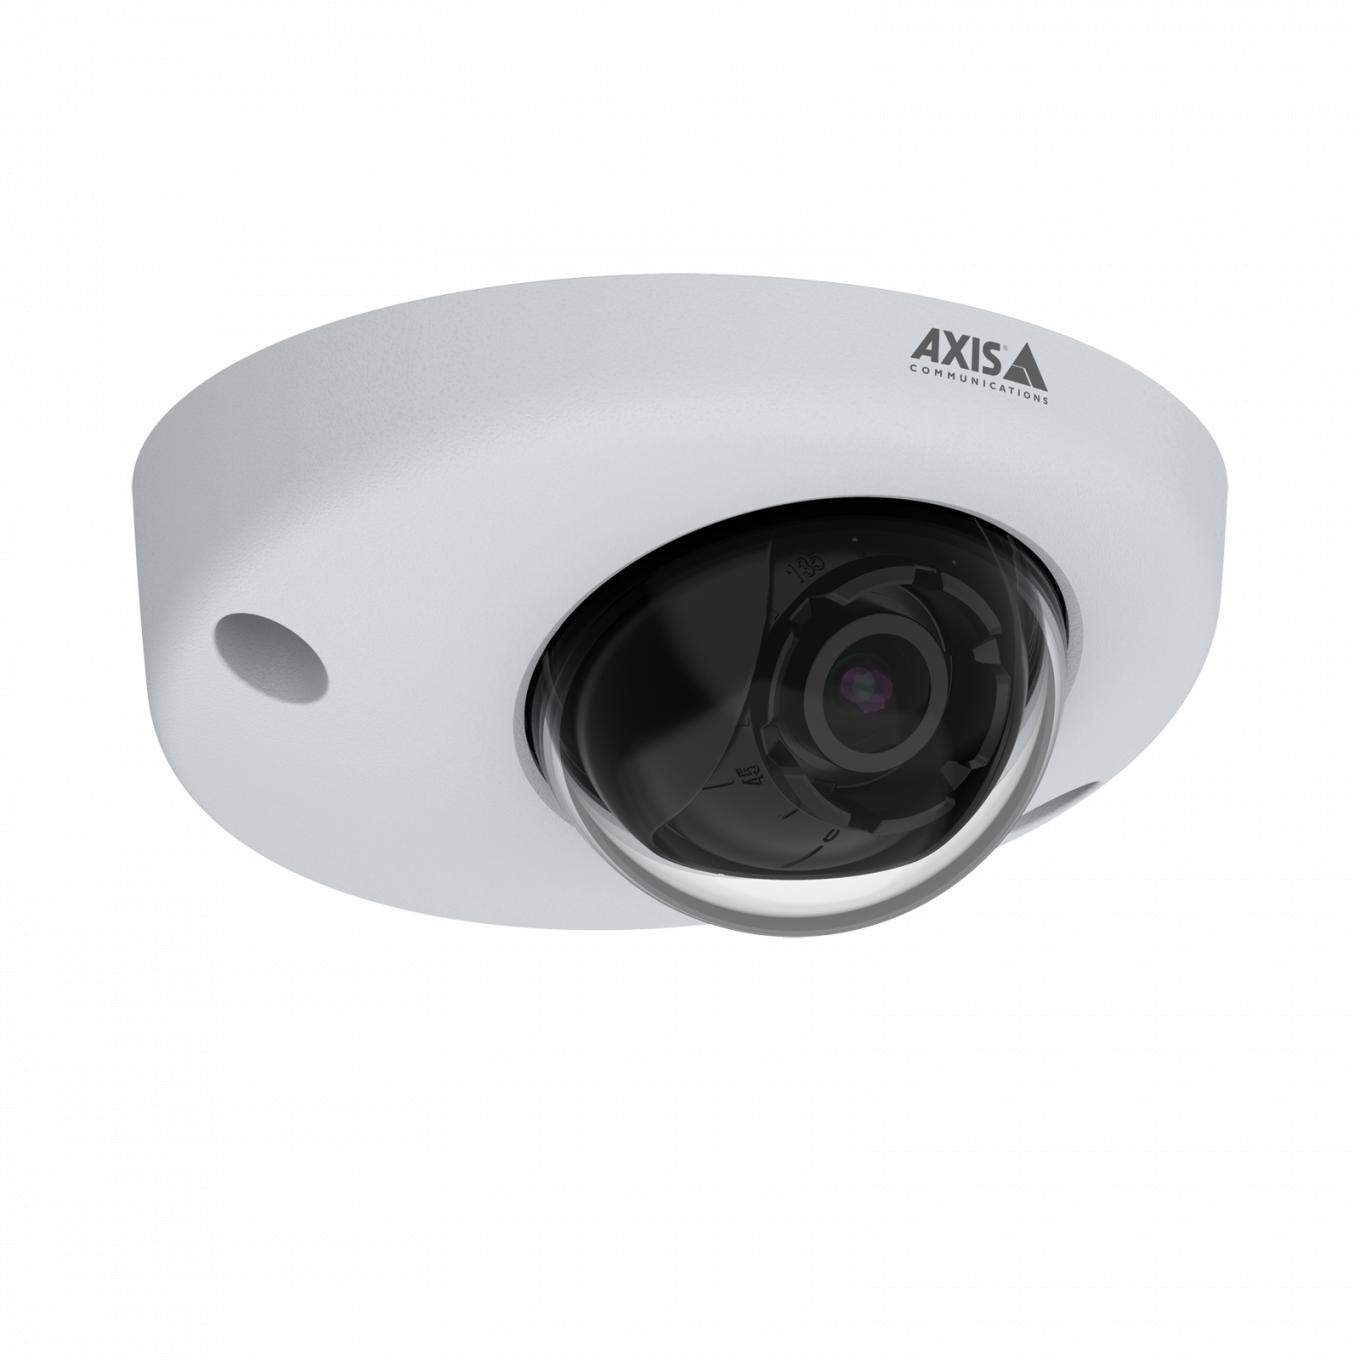 AXIS P3925-R è una telecamera IP robusta e resistente alle manomissioni con Lightfinder. Vista dal suo angolo destro. 